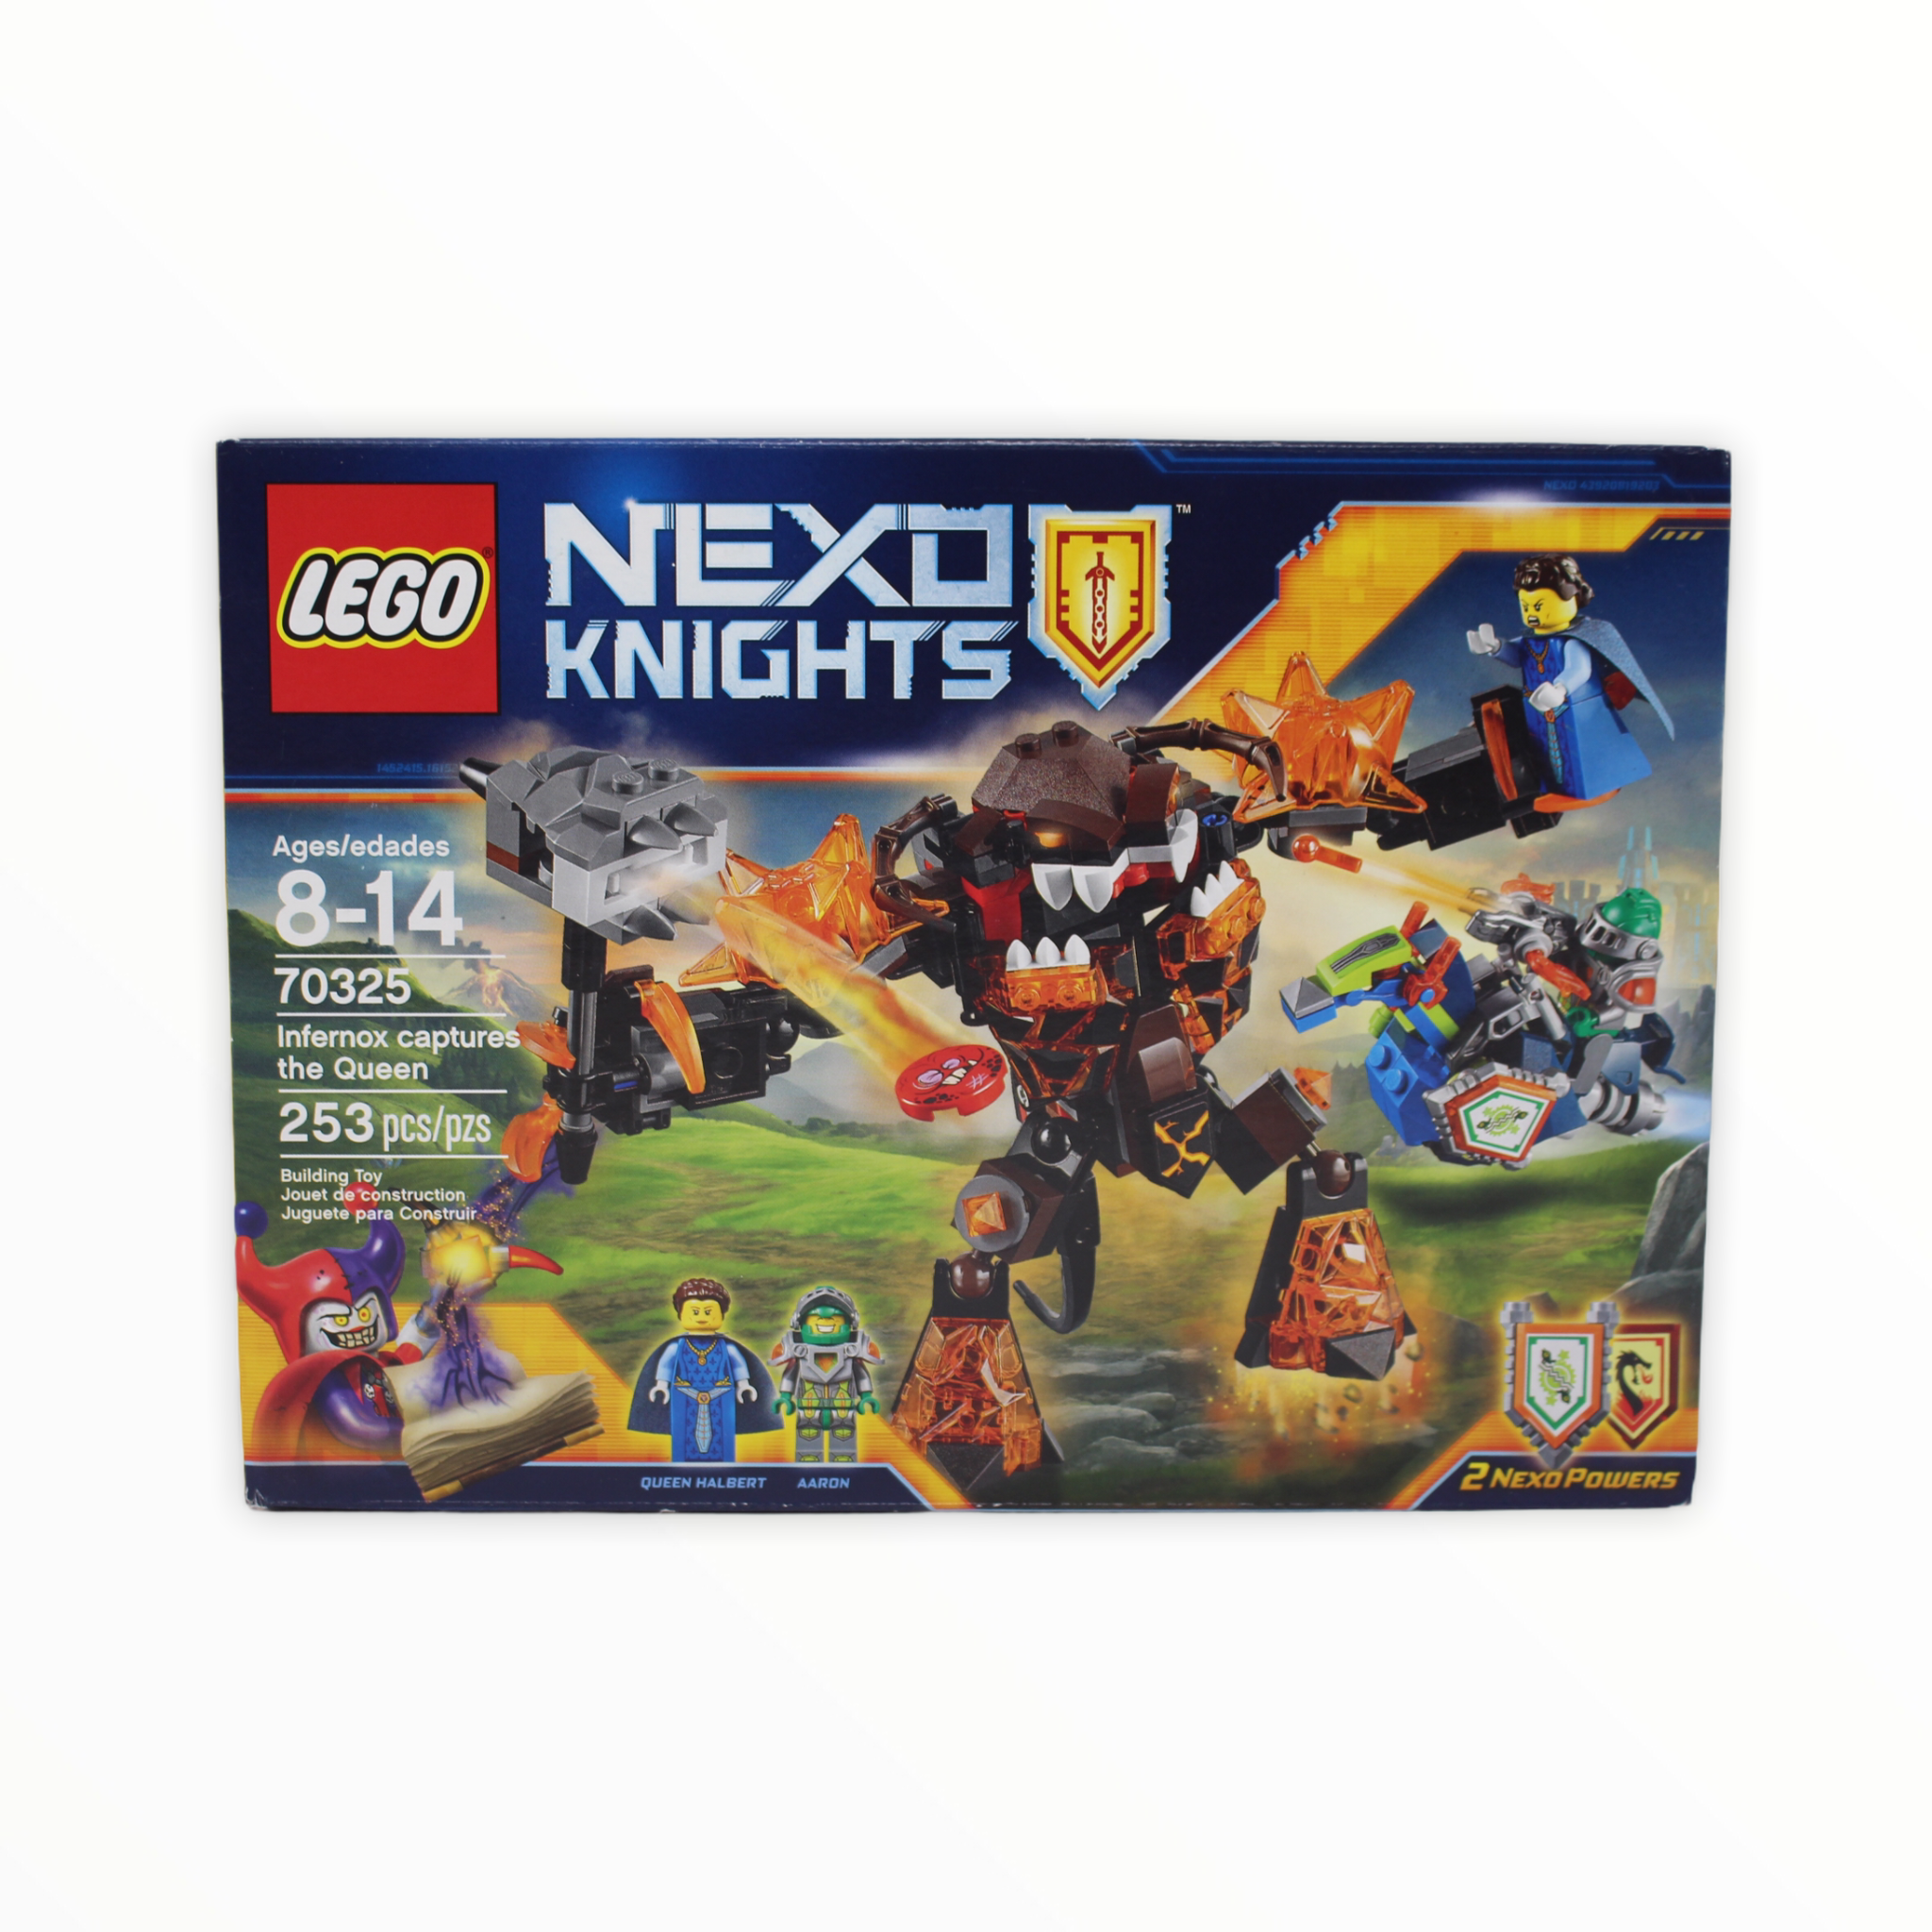 Retired Set 70325 Nexo Knights Infernox captures the Queen